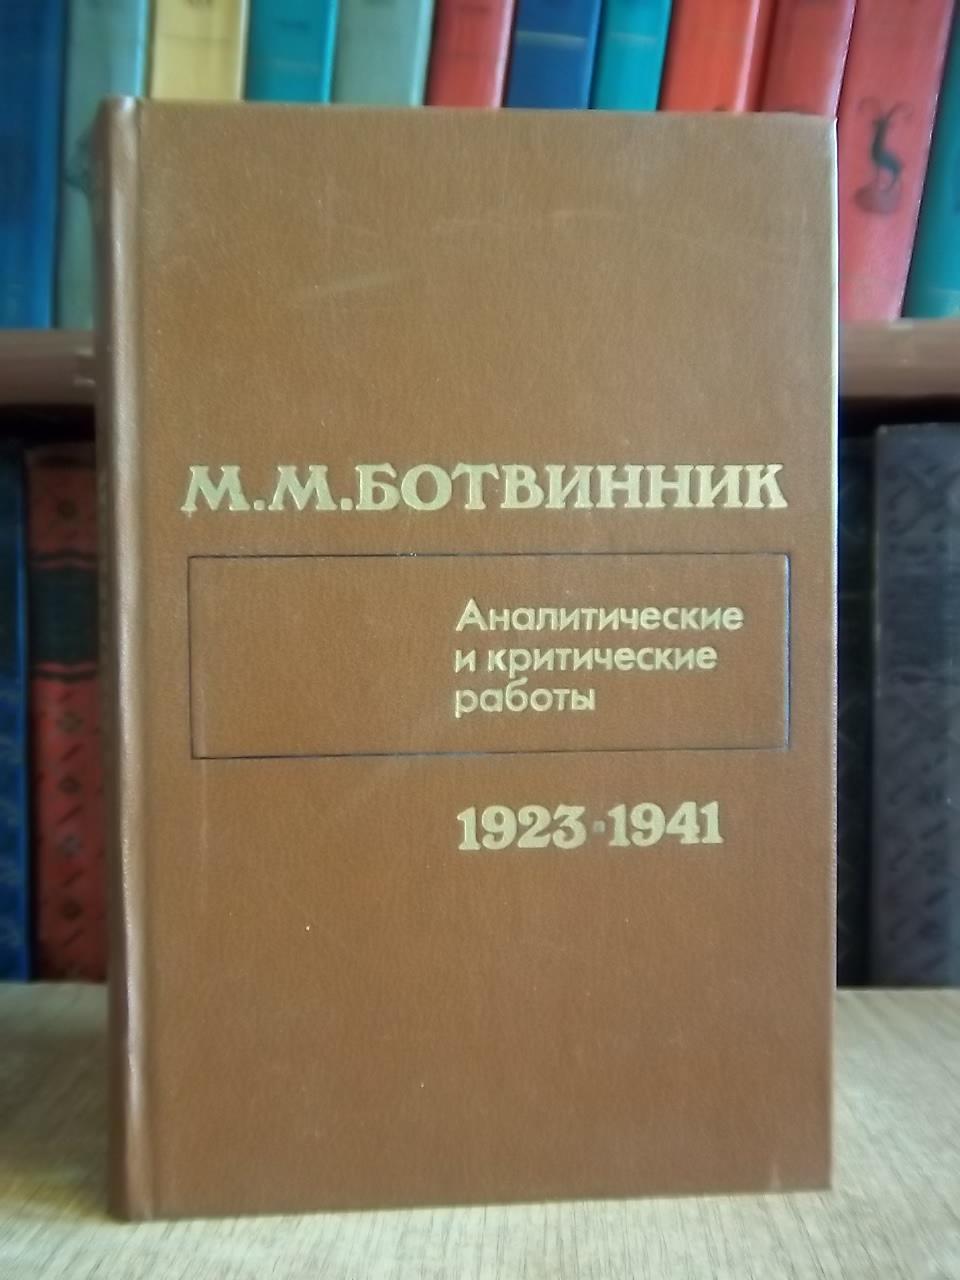 Ботвинник М.М.	Аналитические и критические работы 1923-1941.